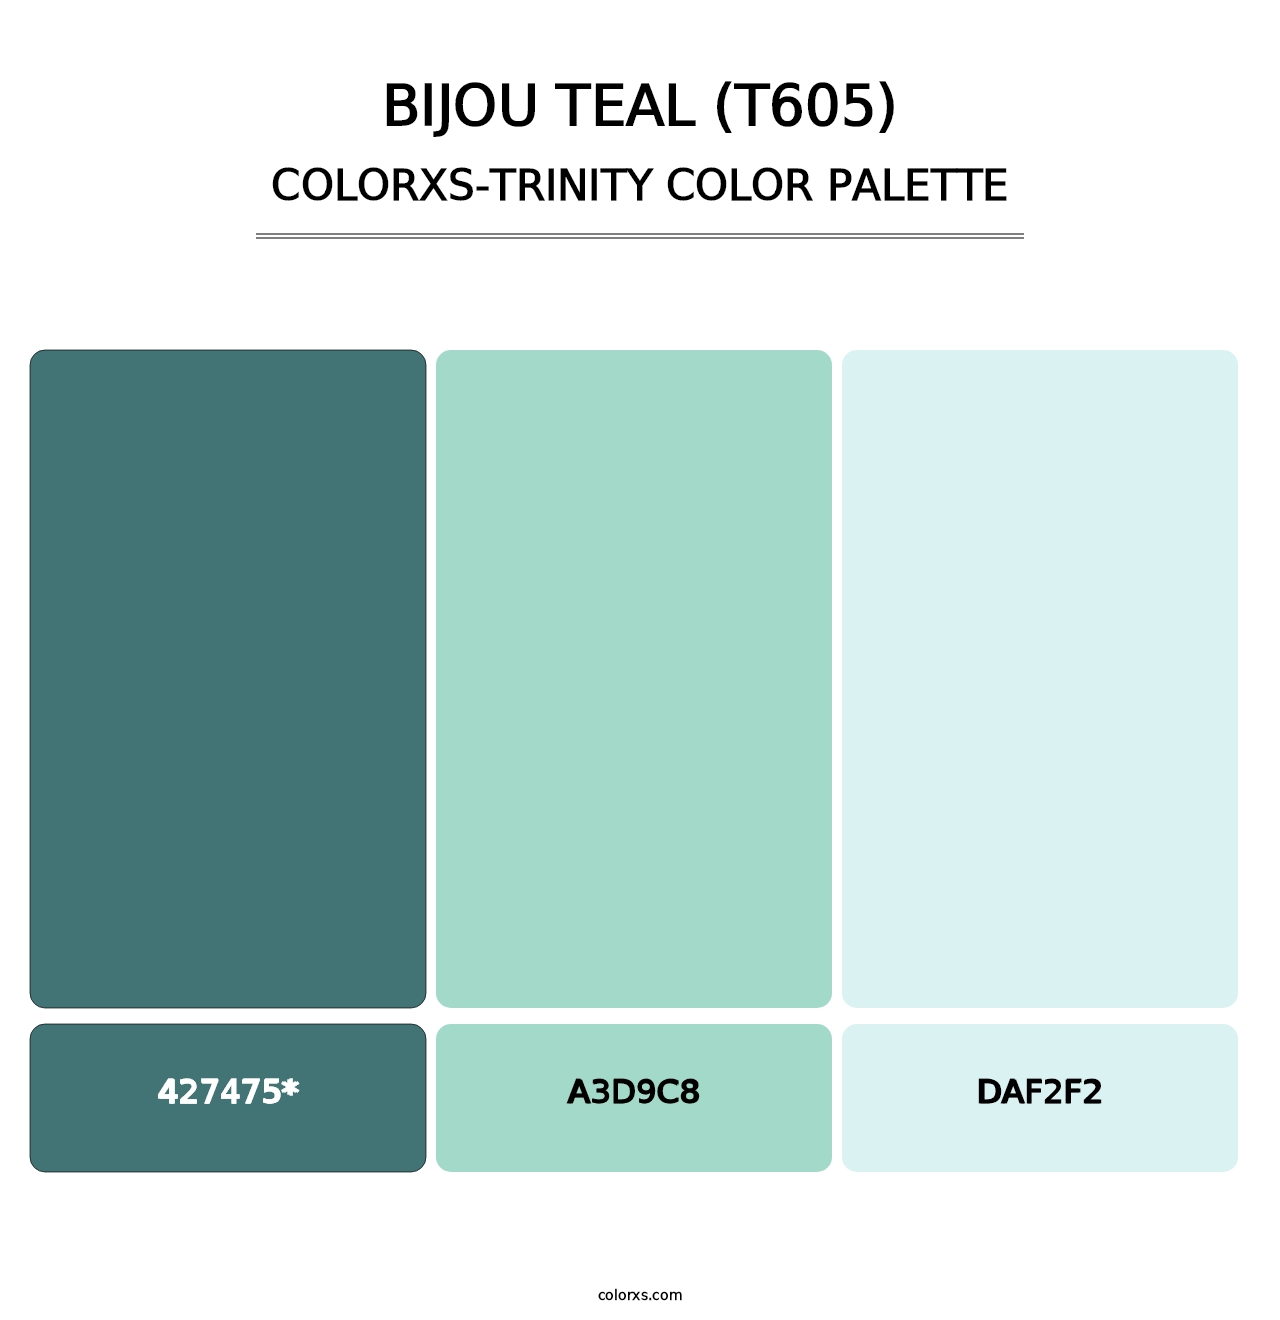 Bijou Teal (T605) - Colorxs Trinity Palette